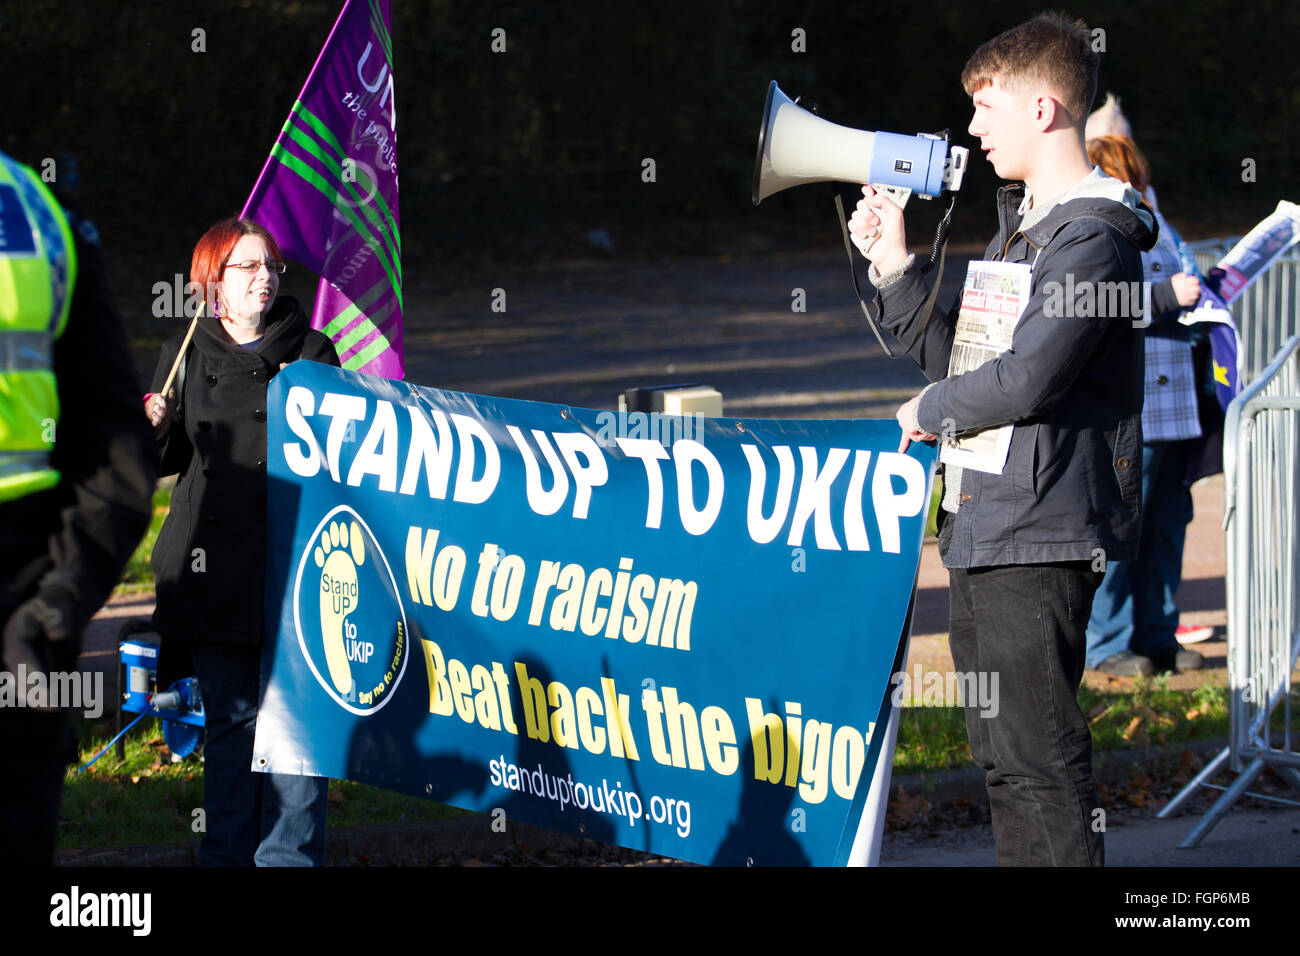 Les manifestants avec banderoles et porte-voix, à dire non à l'extérieur de l'UKIP protester contre le Pays de Galles de l'UKIP conférence. Port Talbot, 2014 Banque D'Images